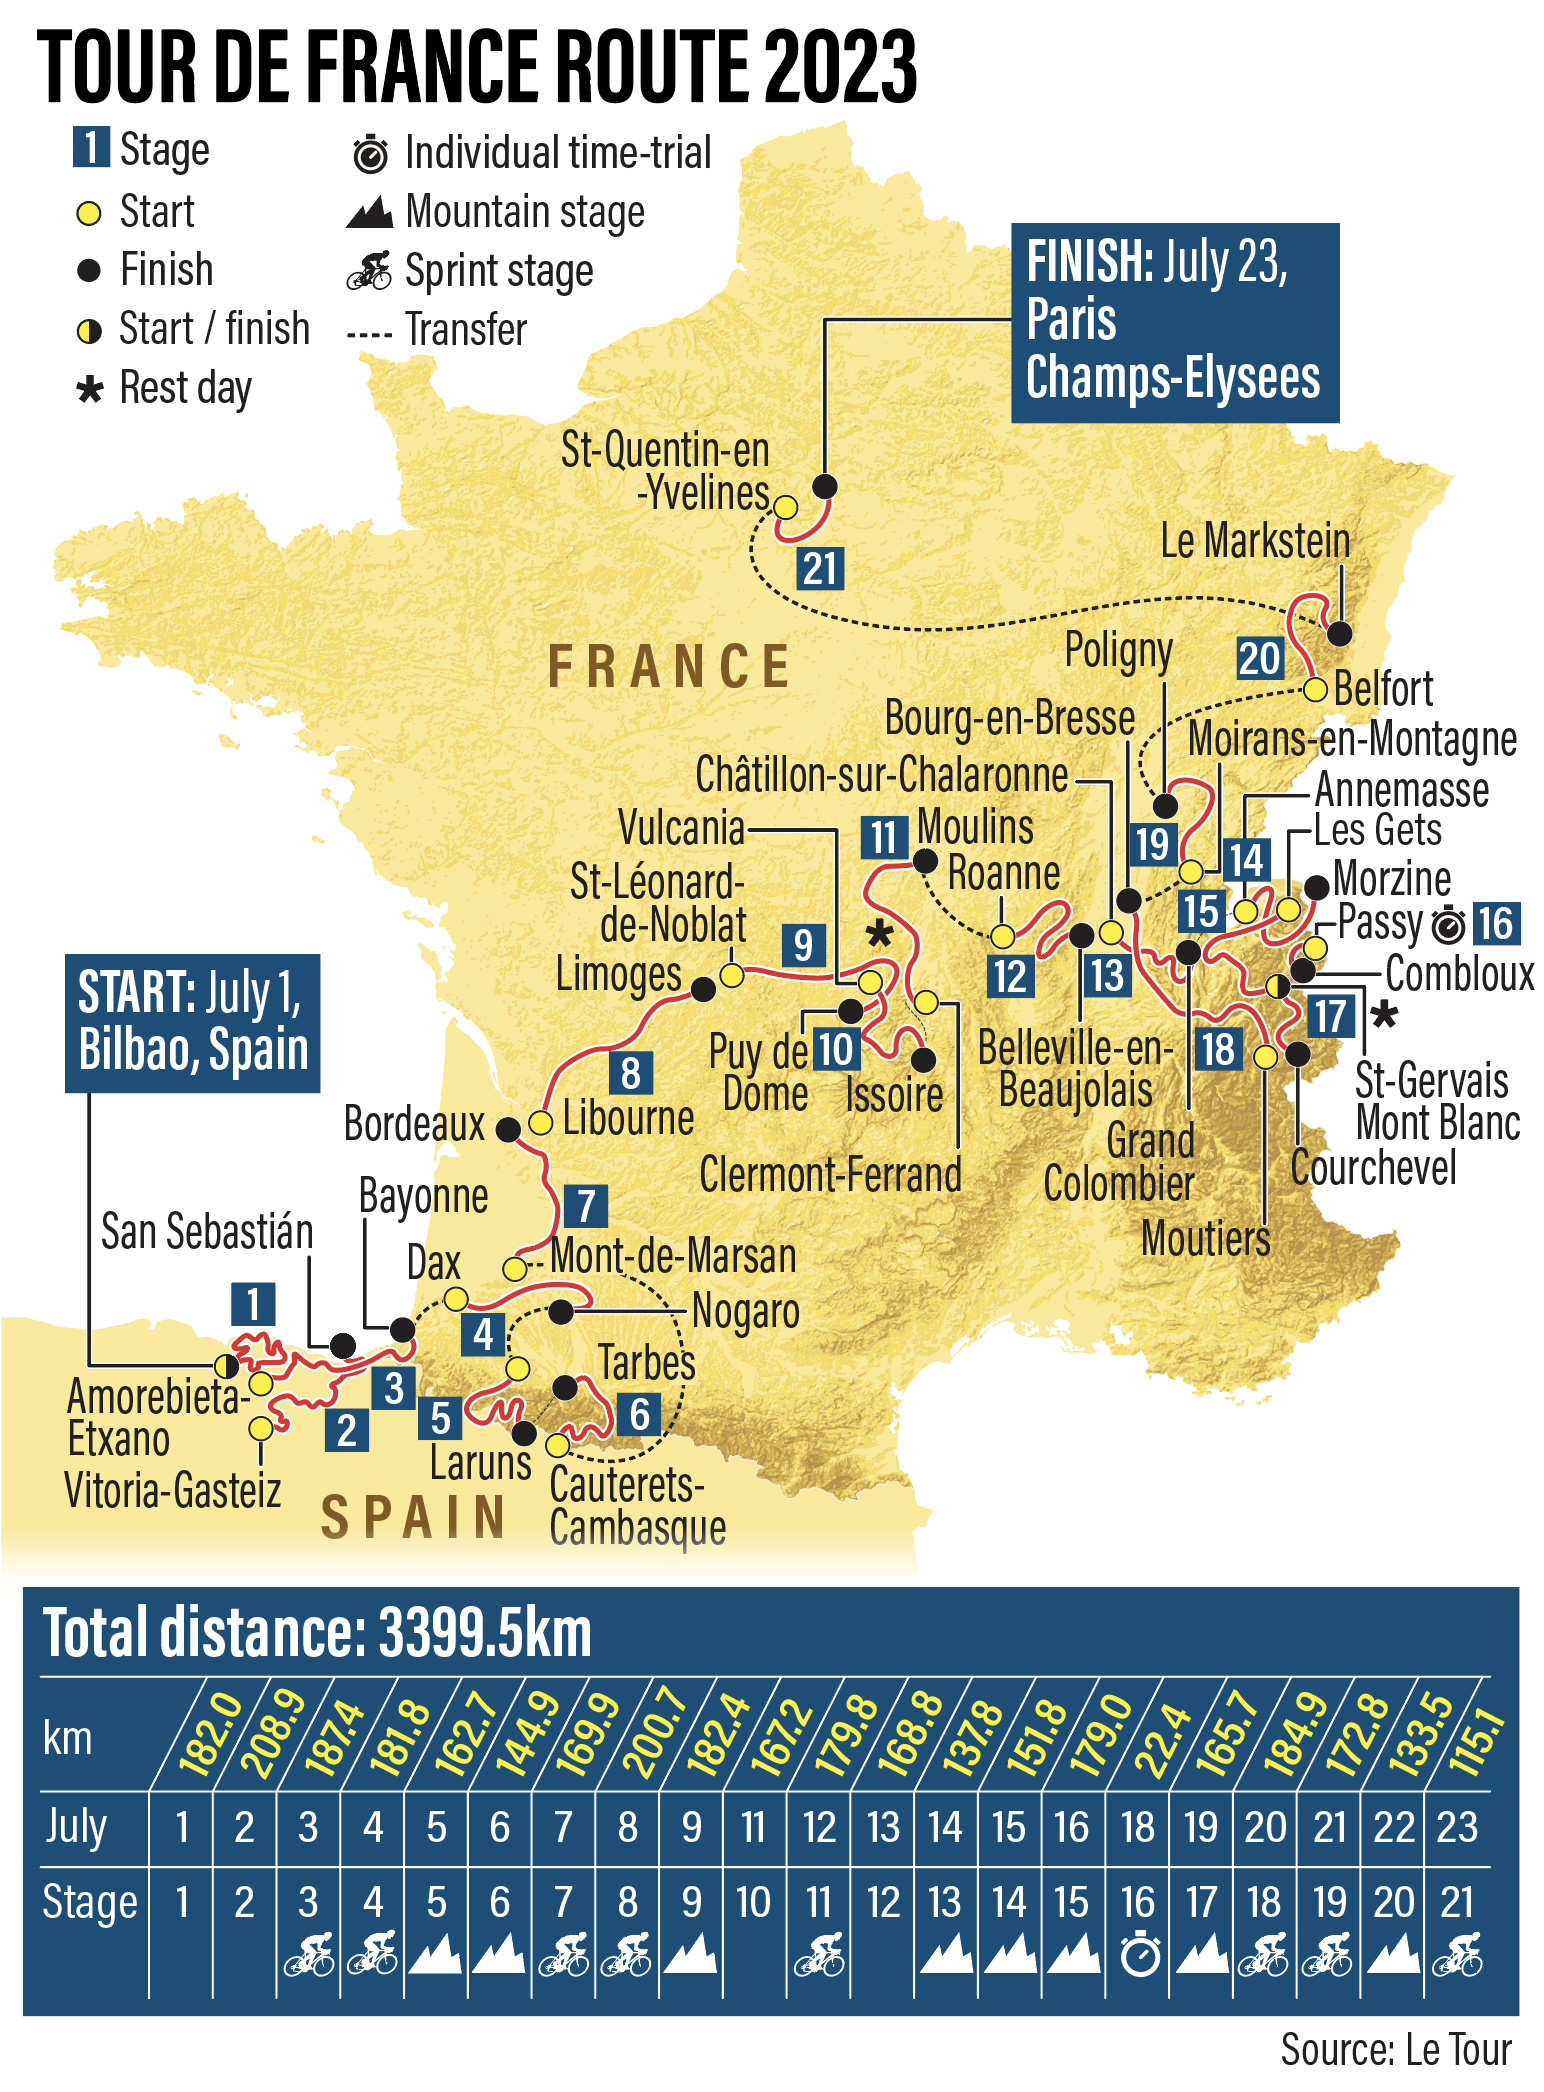 Tour de France 2023: full team-by-team guide, Tour de France 2023